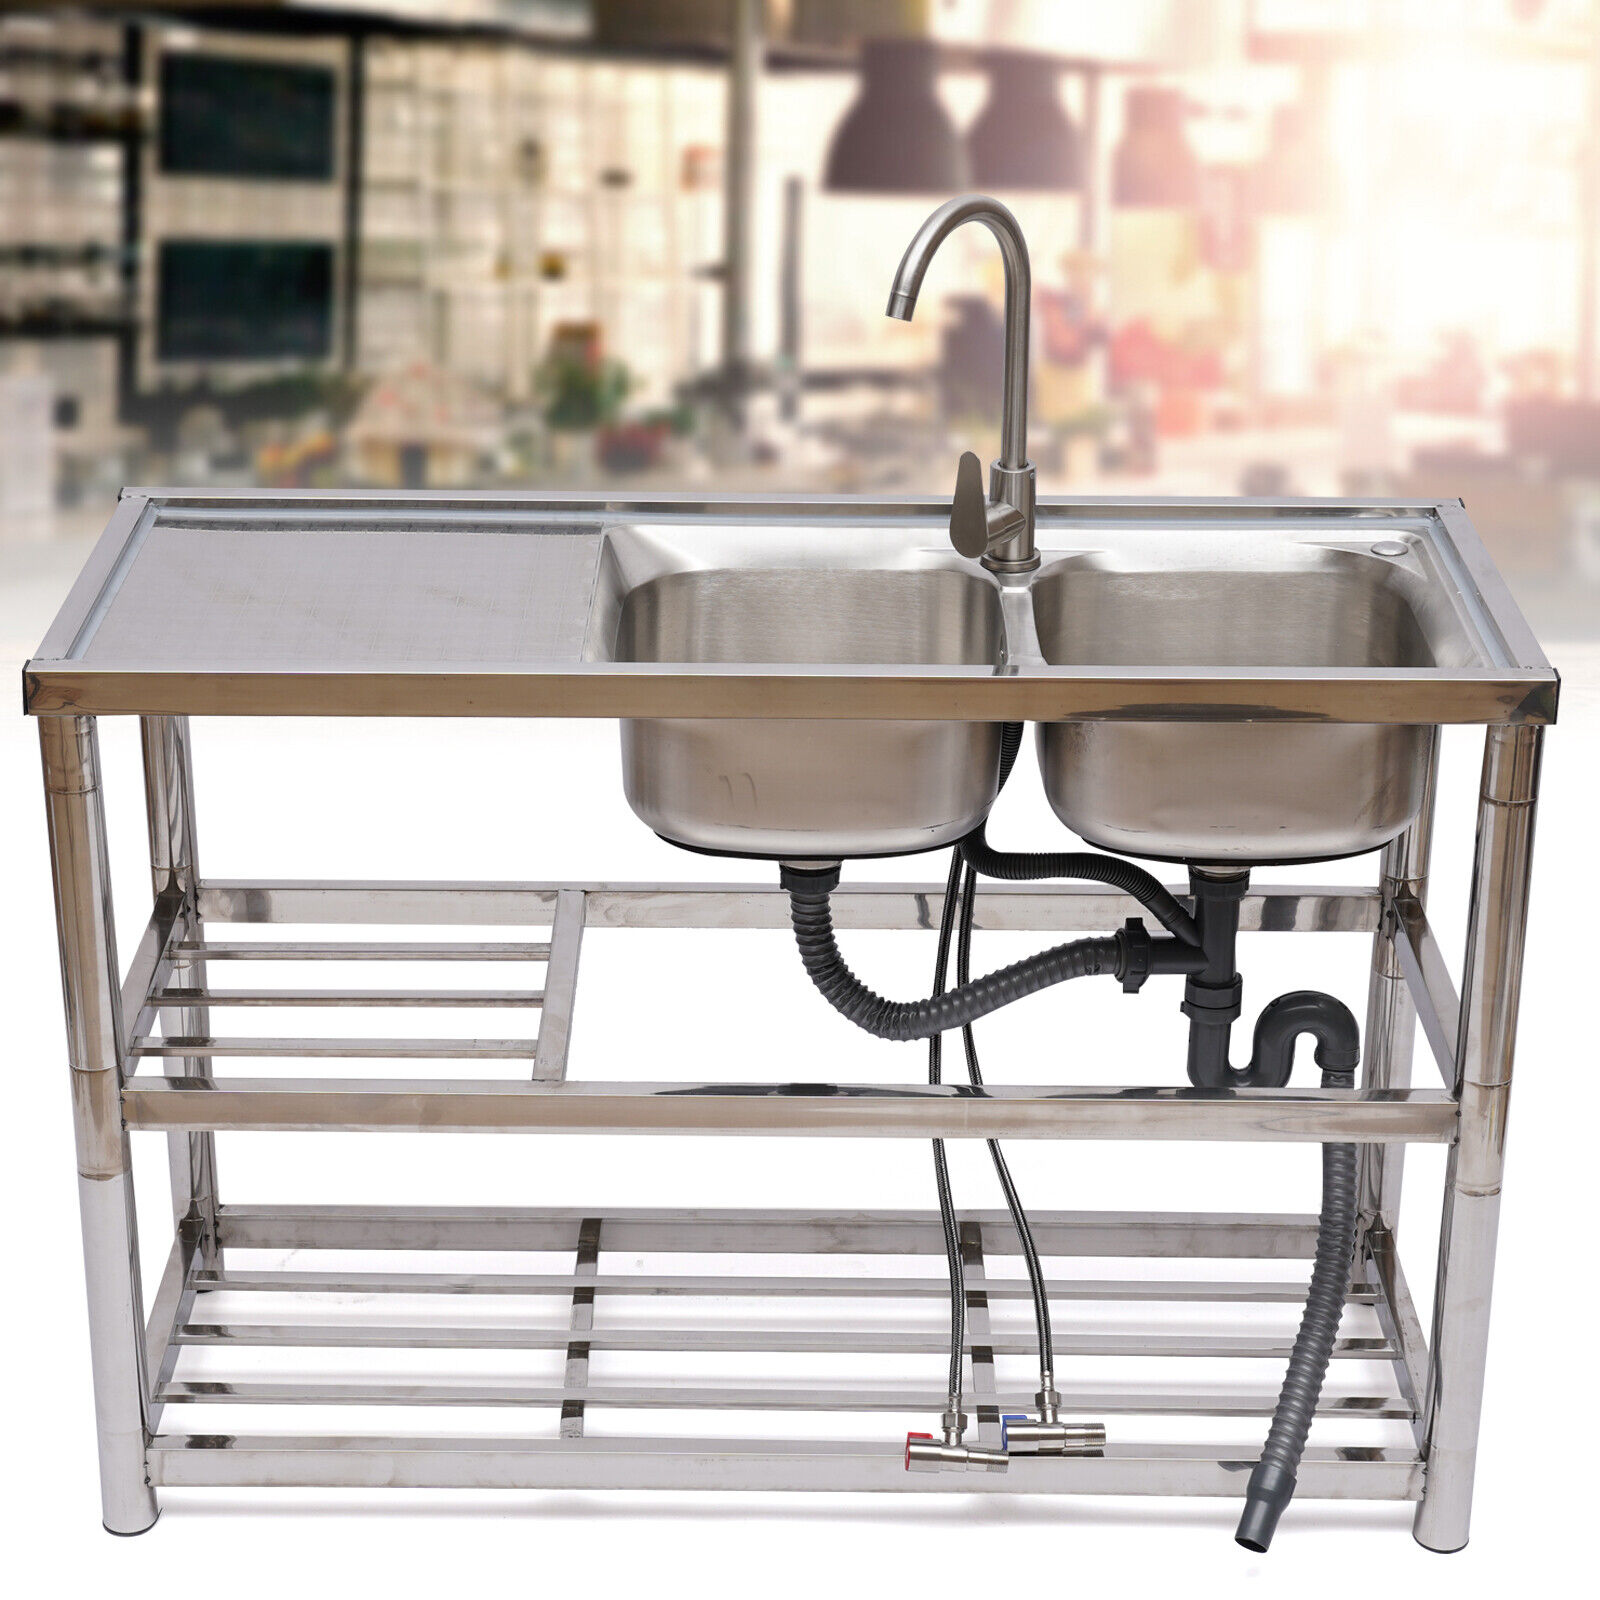 La pierre angulaire de l’hygiène : les éviers et robinets commerciaux dans les cuisines professionnelles